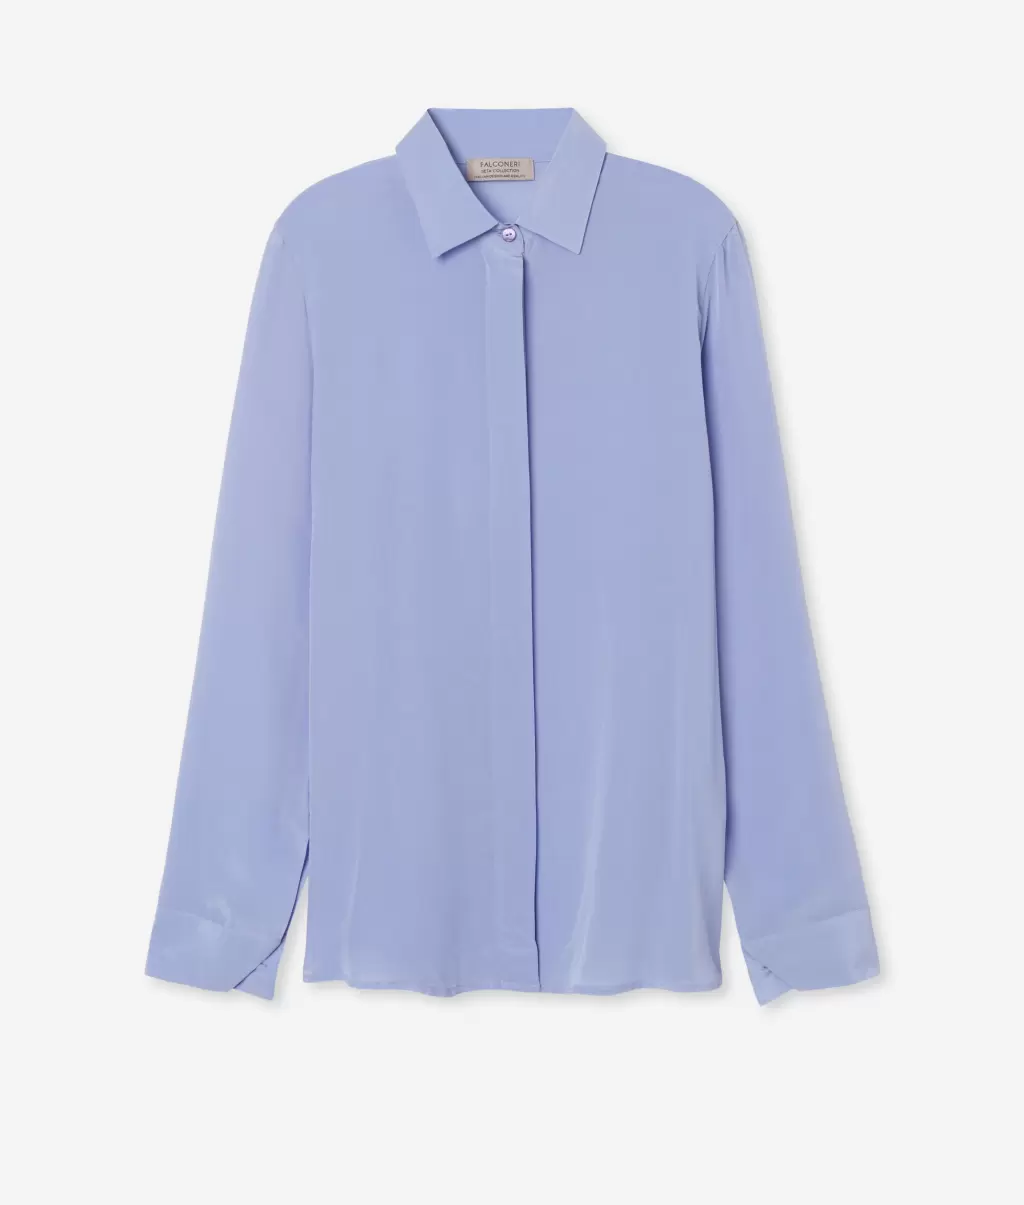 Koszule I Bluzki Kobieta Jedwabna Koszula Z Kołnierzykiem Light_Blue Falconeri - 4